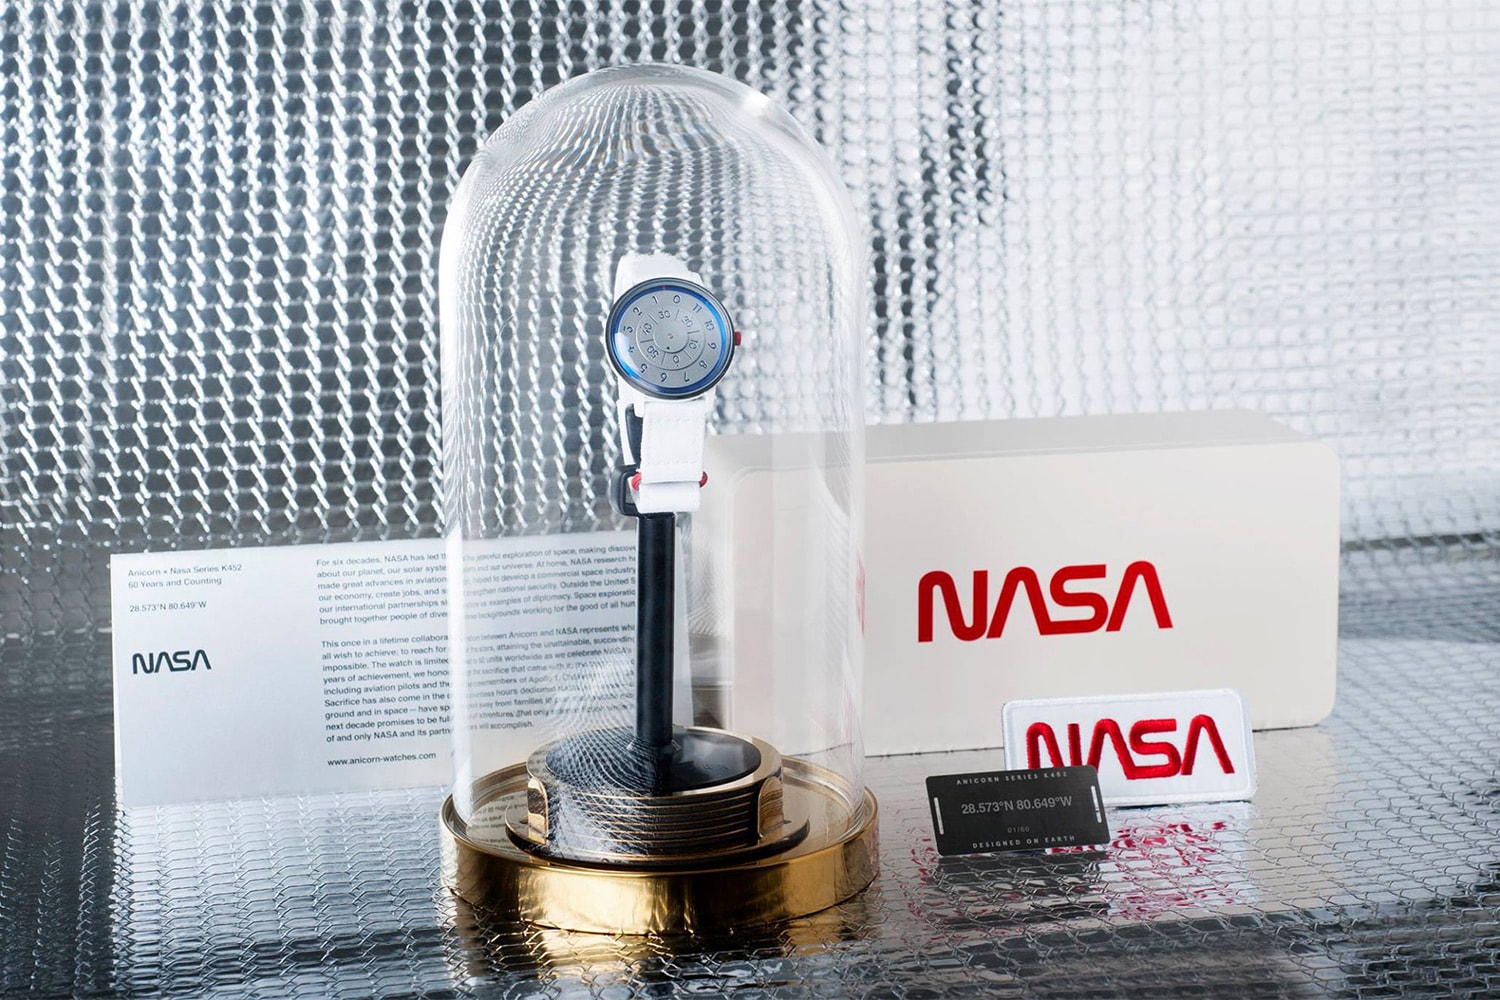 애니콘 x NASA 창립 60주년 기념 한정판 협업 시계 2018